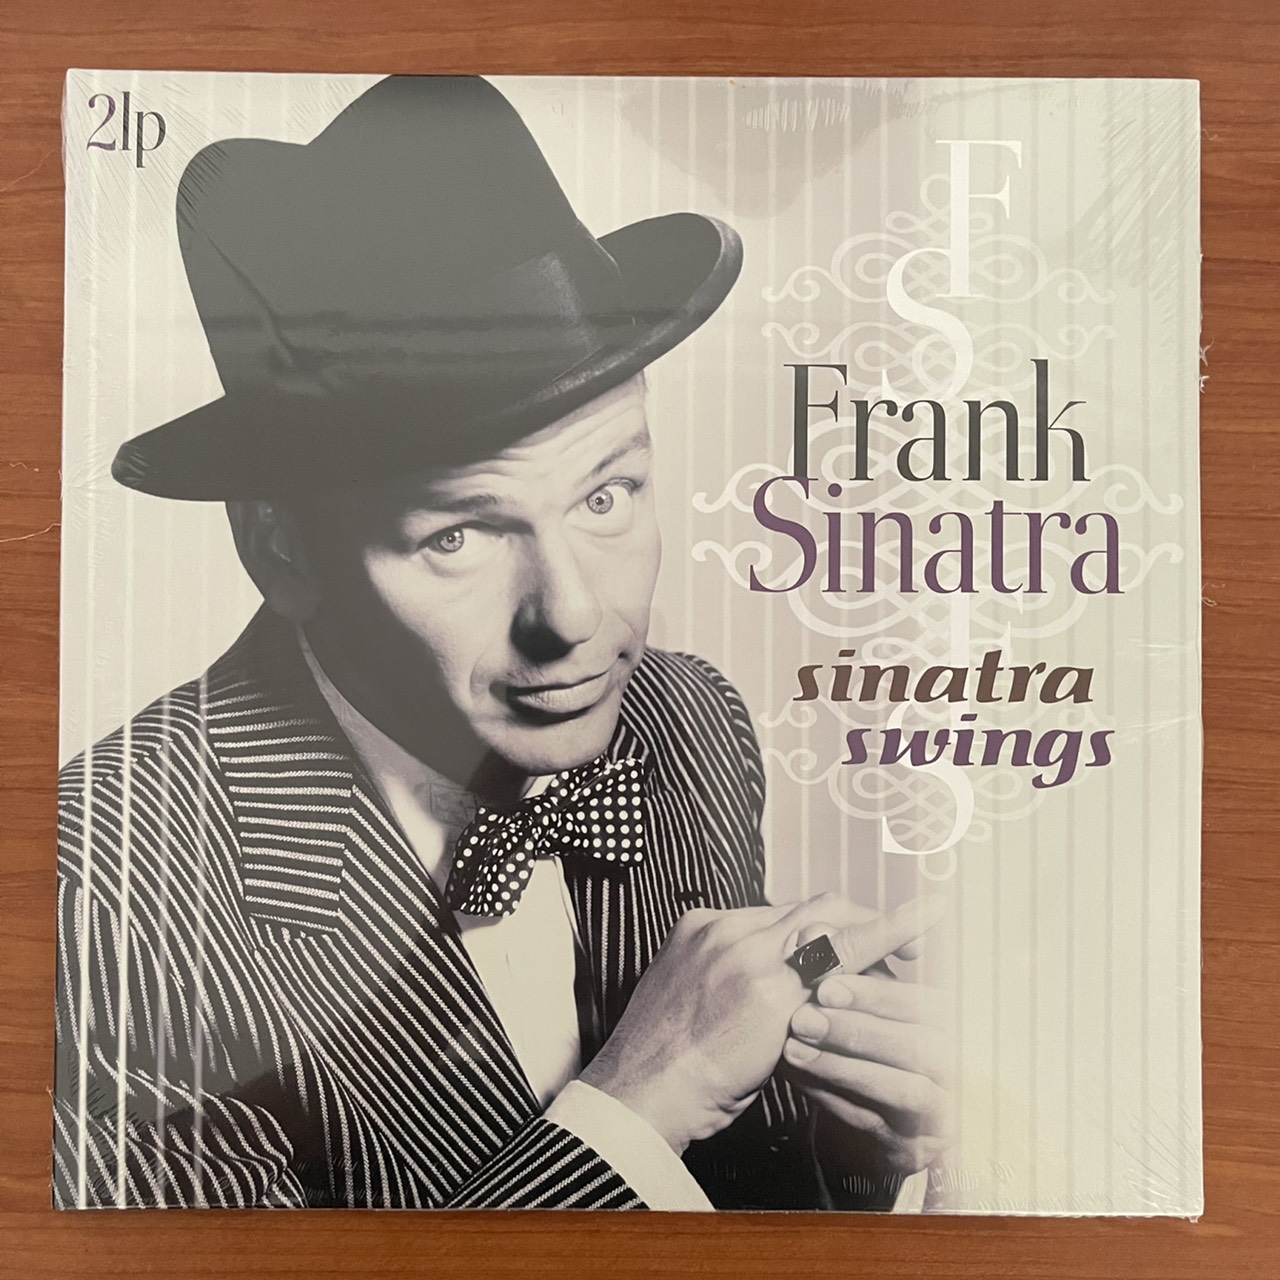 แผ่นเสียง Frank Sinatra -Sinatra Swings 2lp Made in eu แผ่นเสียงใหม่ ซีล